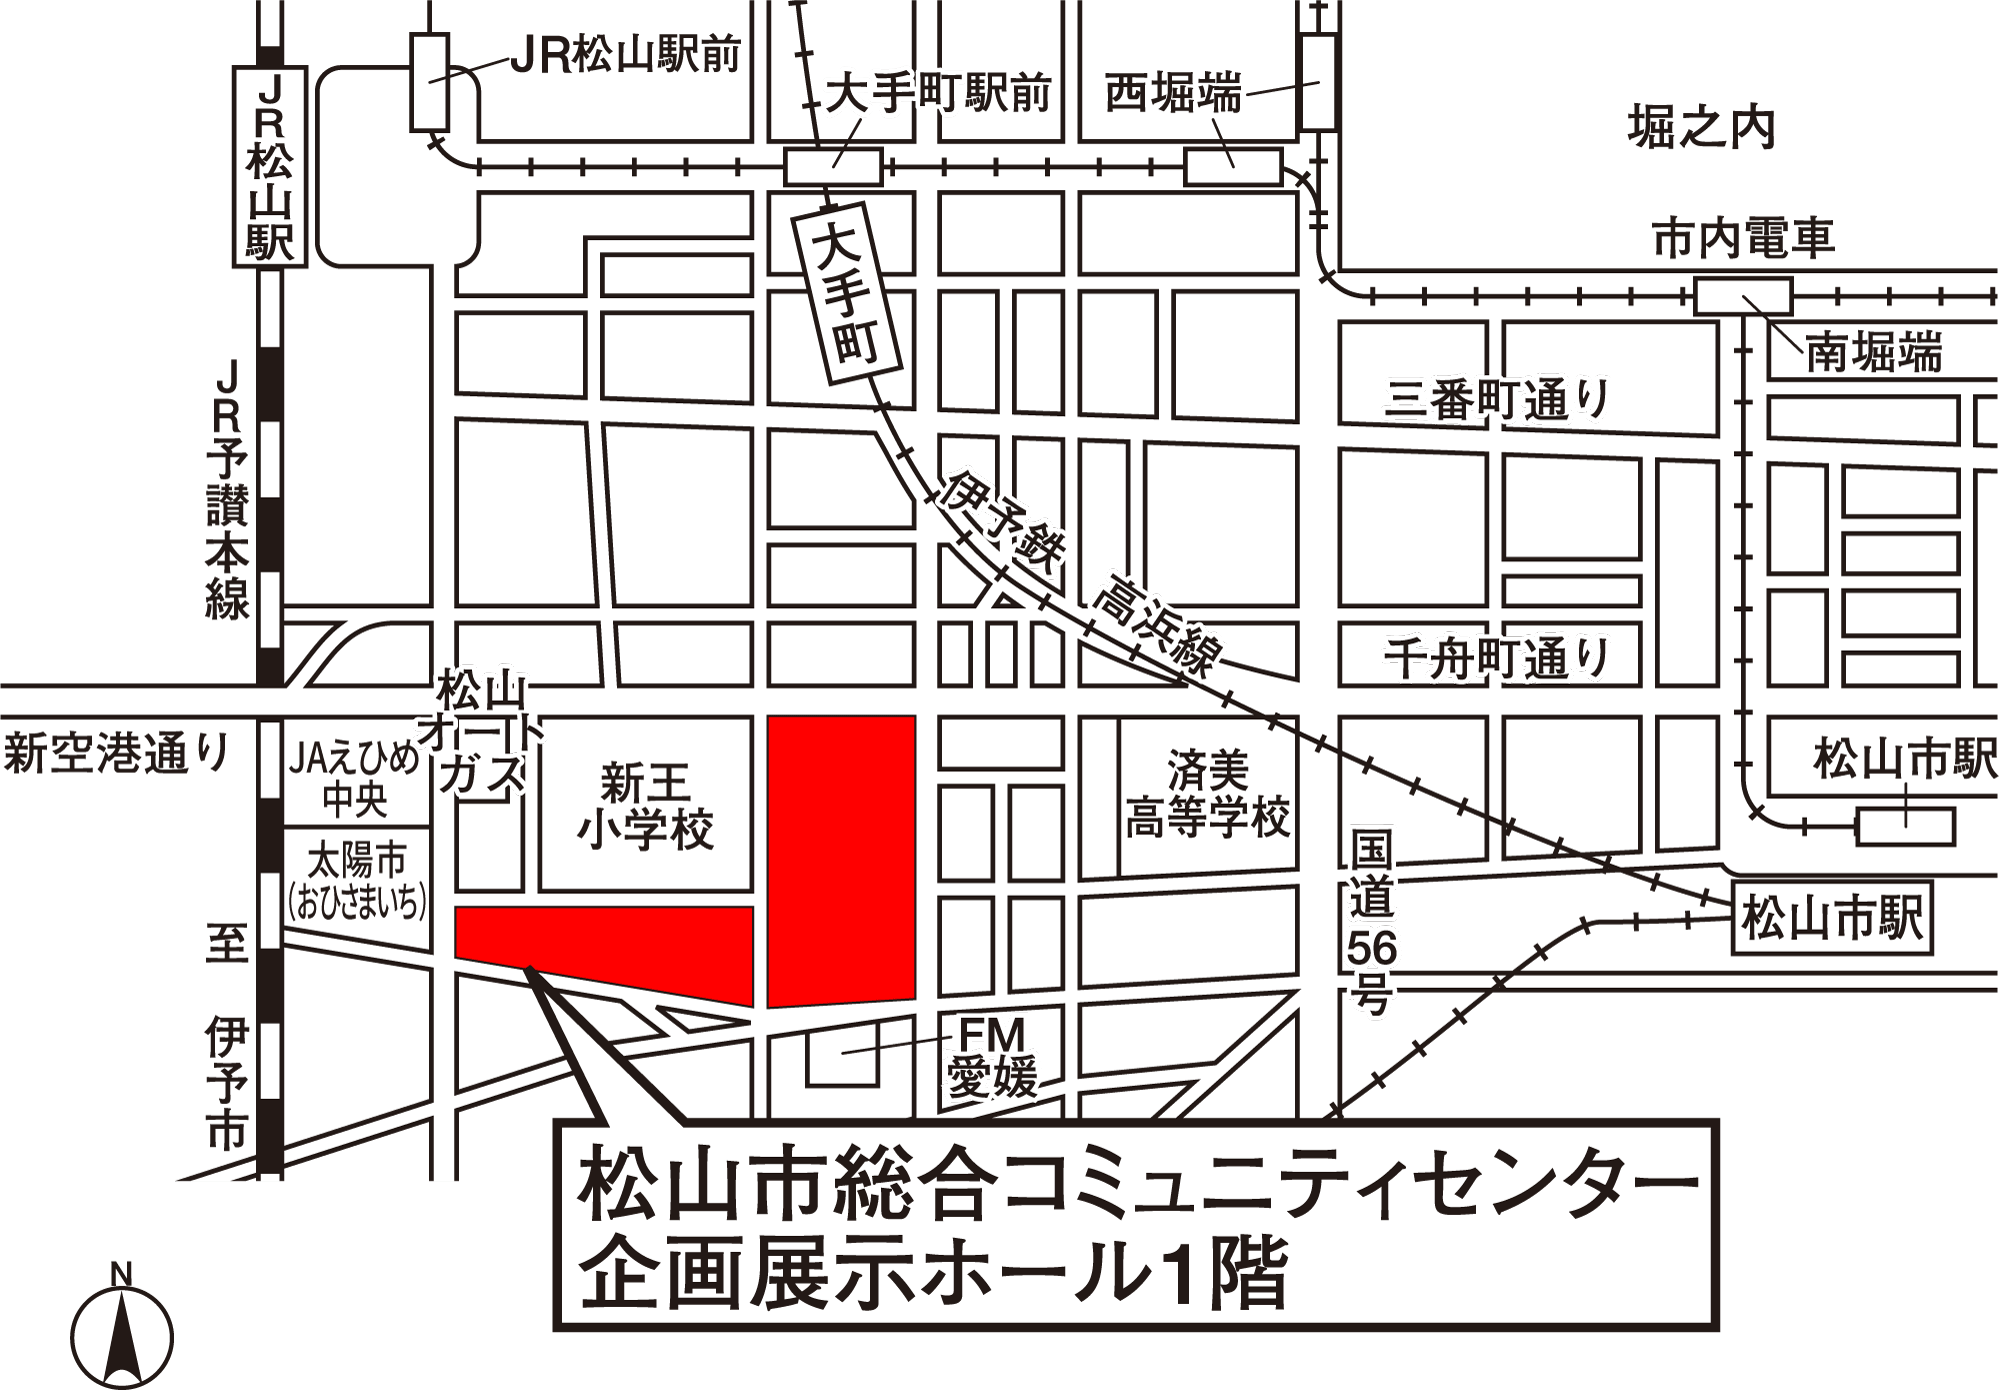 松山市総合コミュニティセンター企画展示ホール1階 地図